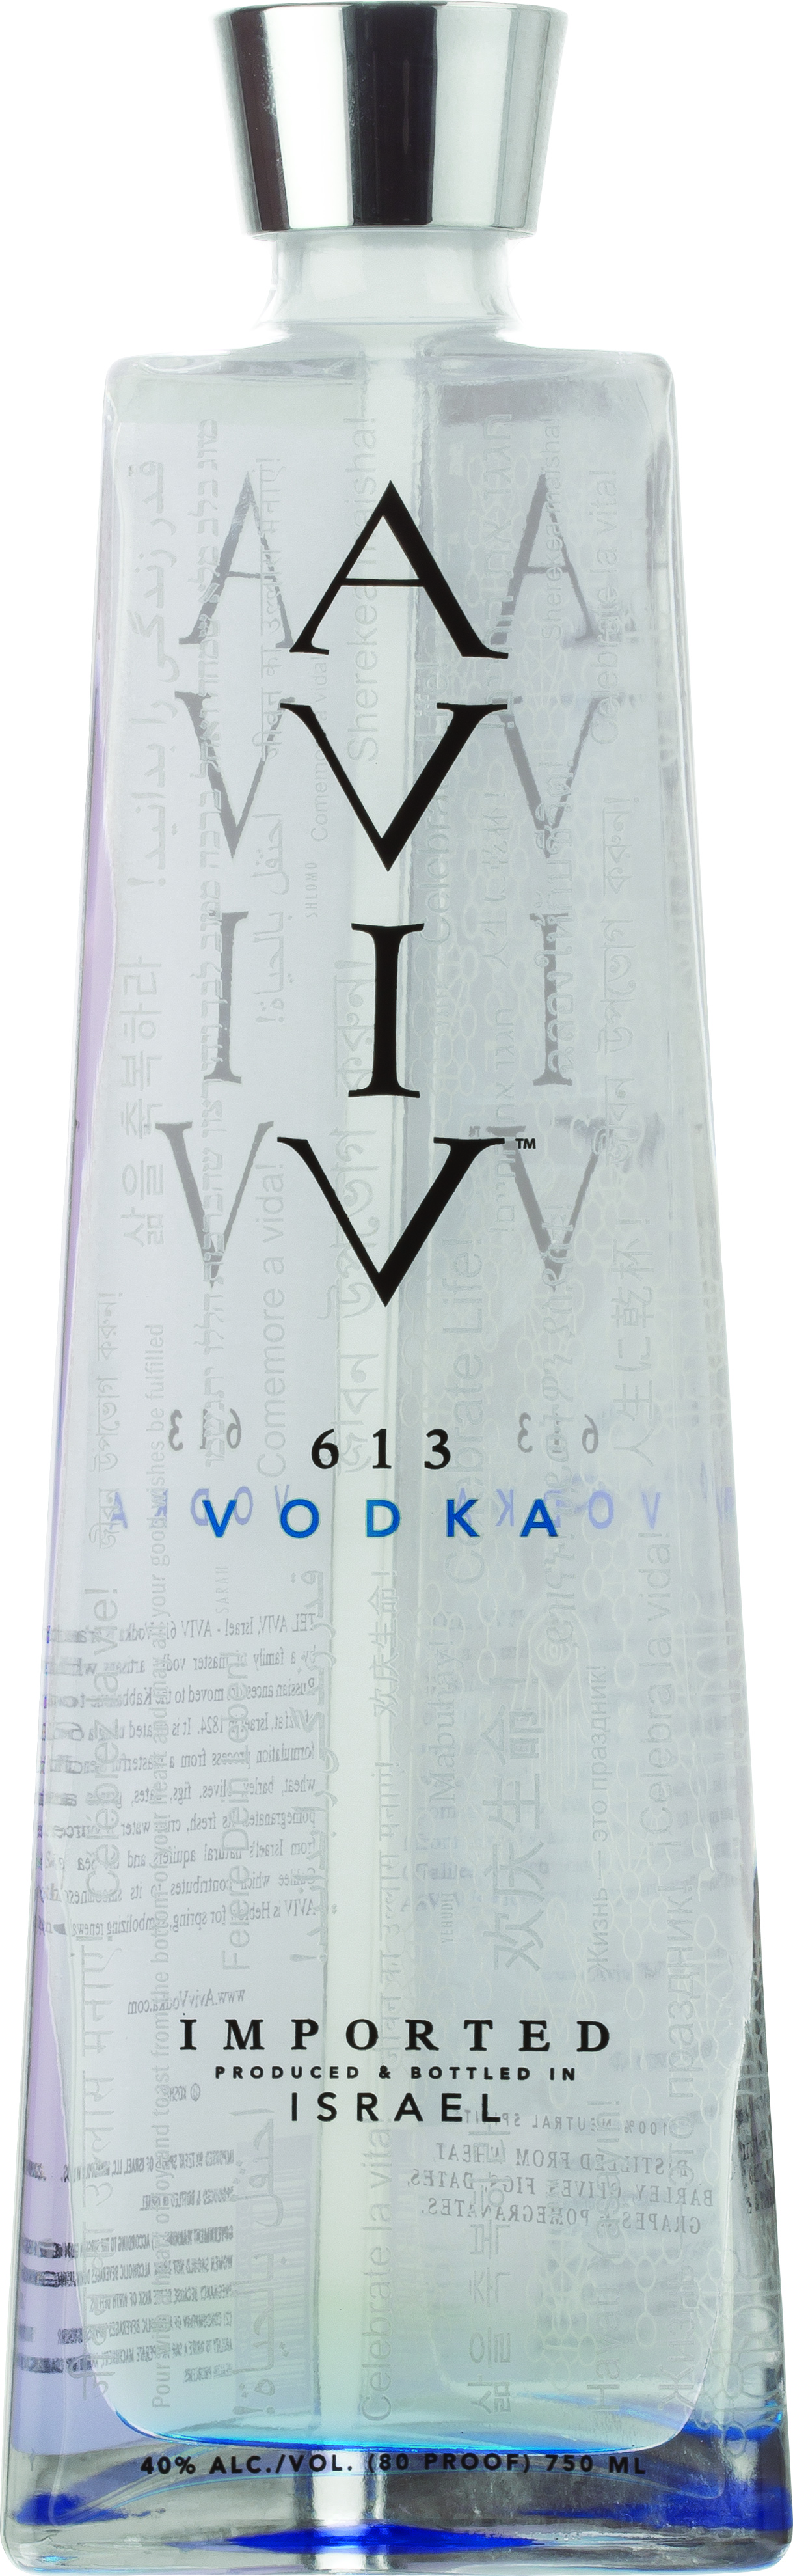 Aviv Vodka white.jpg